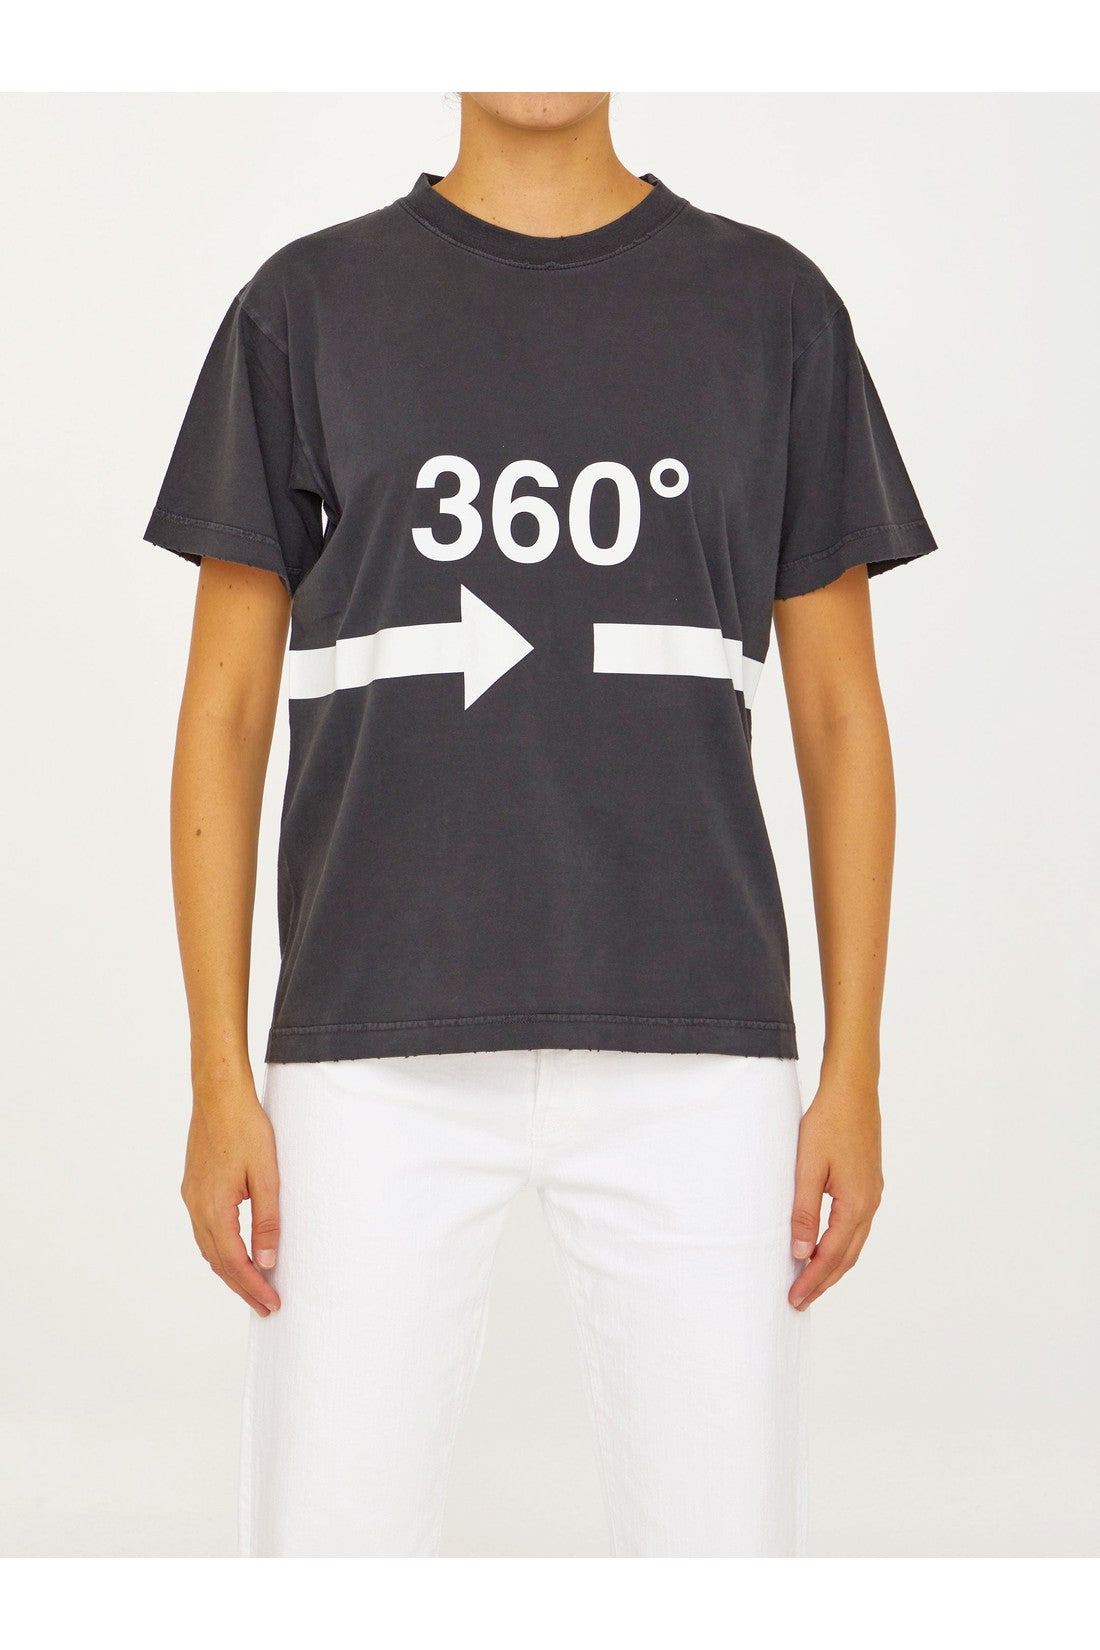 360° t-shirt